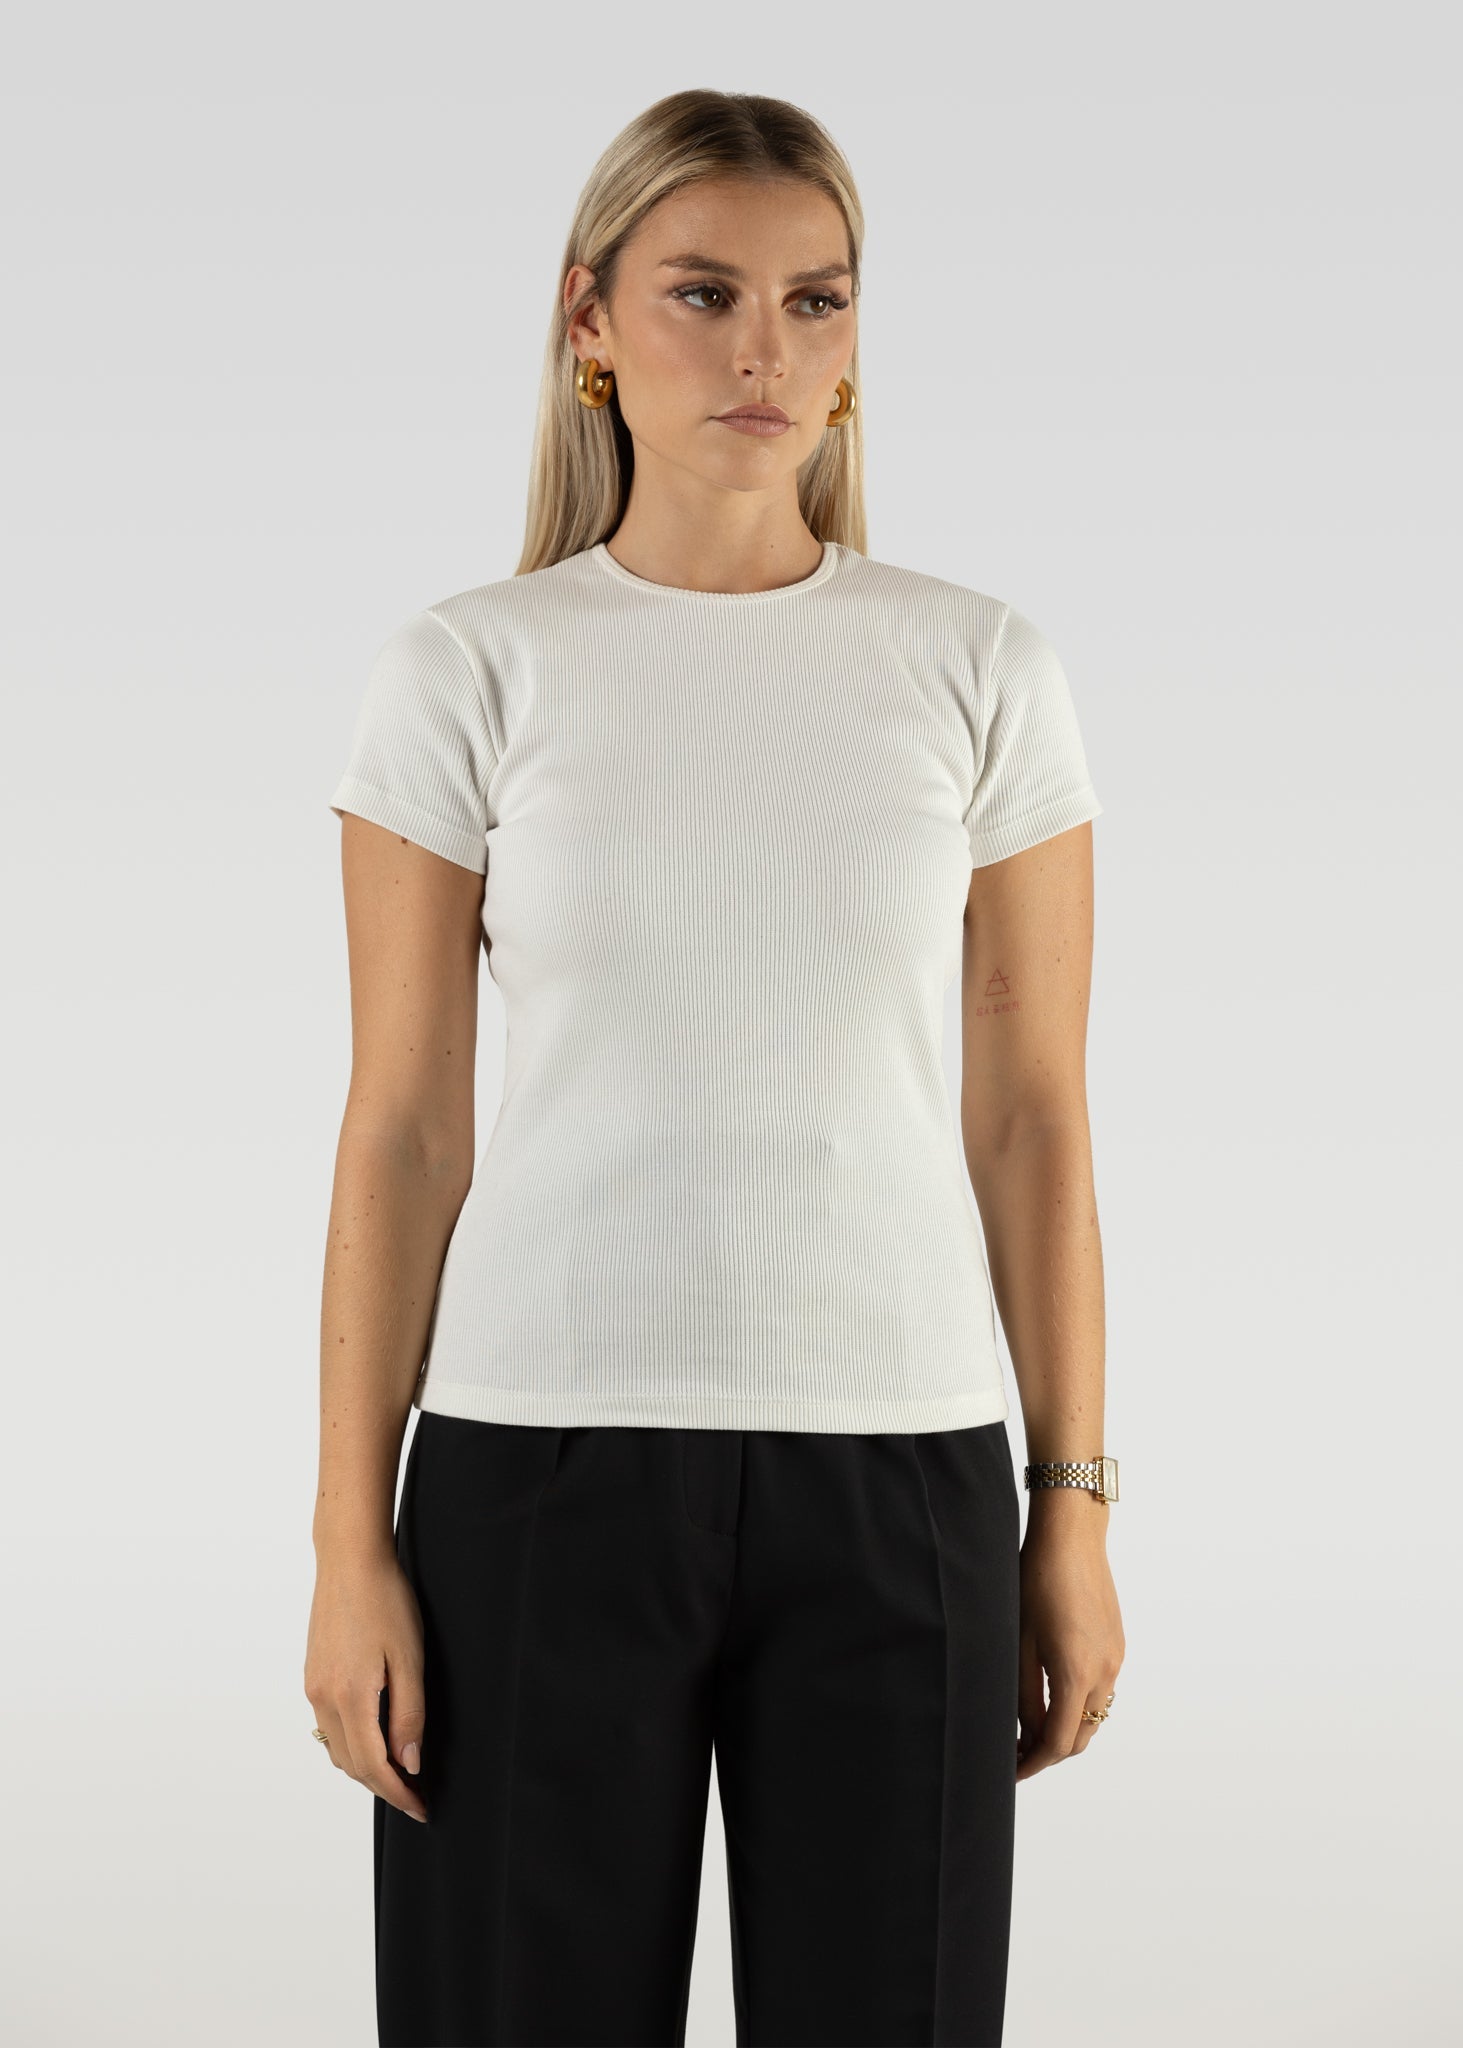 GS T-Shirt Full Length White